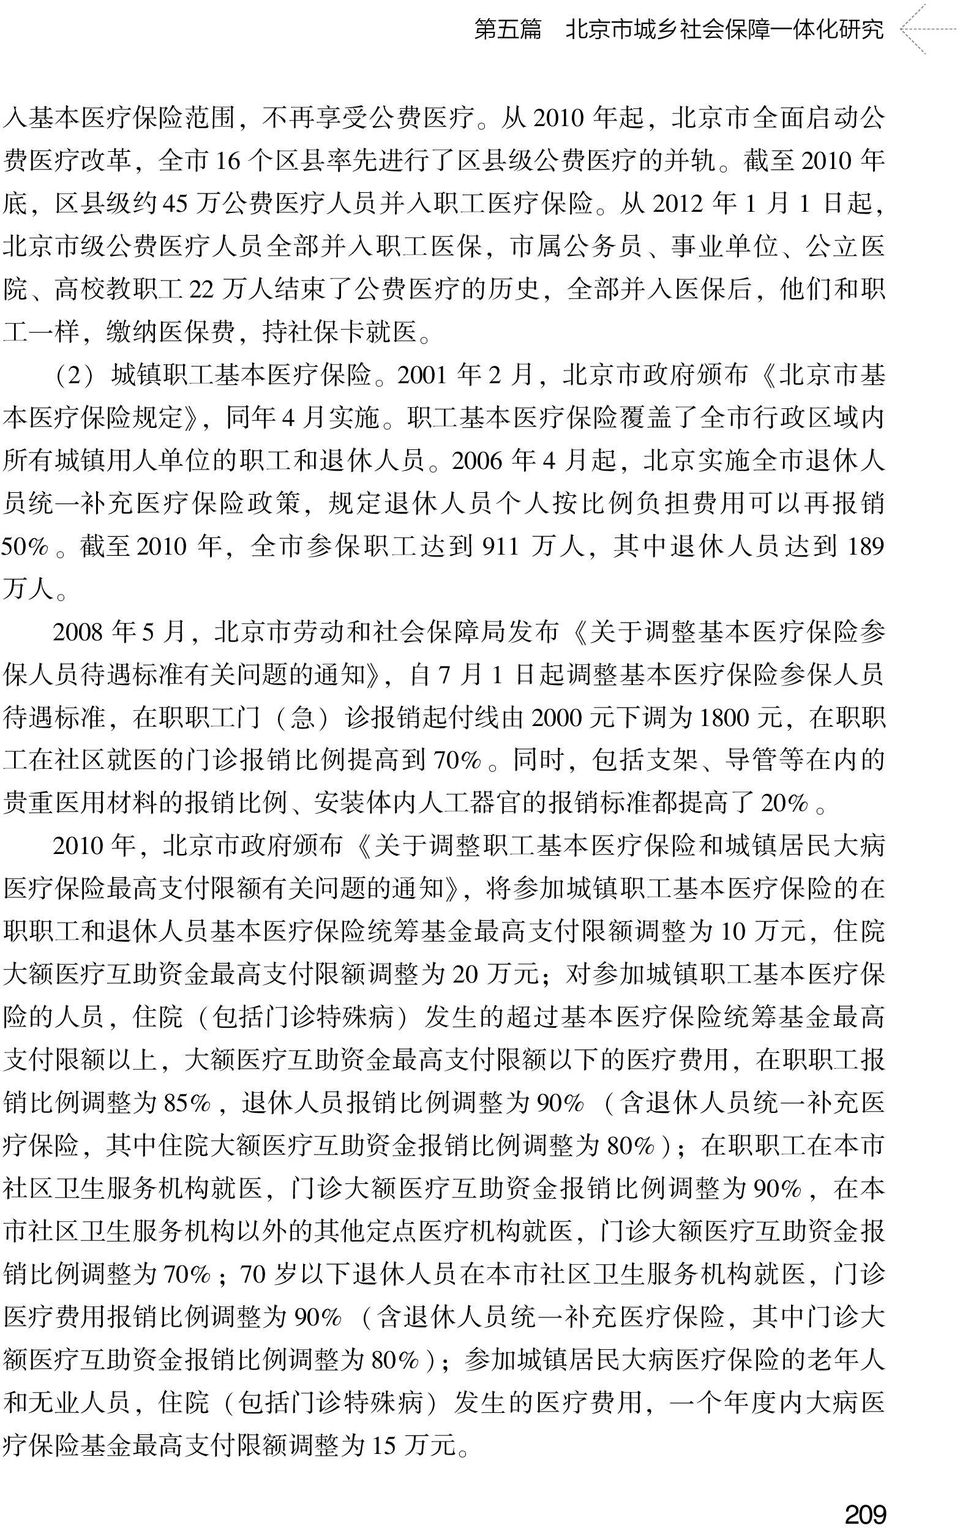 保 险 2001 年 2 月, 北 京 市 政 府 颁 布 北 京 市 基 本 医 疗 保 险 规 定, 同 年 4 月 实 施 职 工 基 本 医 疗 保 险 覆 盖 了 全 市 行 政 区 域 内 所 有 城 镇 用 人 单 位 的 职 工 和 退 休 人 员 2006 年 4 月 起, 北 京 实 施 全 市 退 休 人 员 统 一 补 充 医 疗 保 险 政 策, 规 定 退 休 人 员